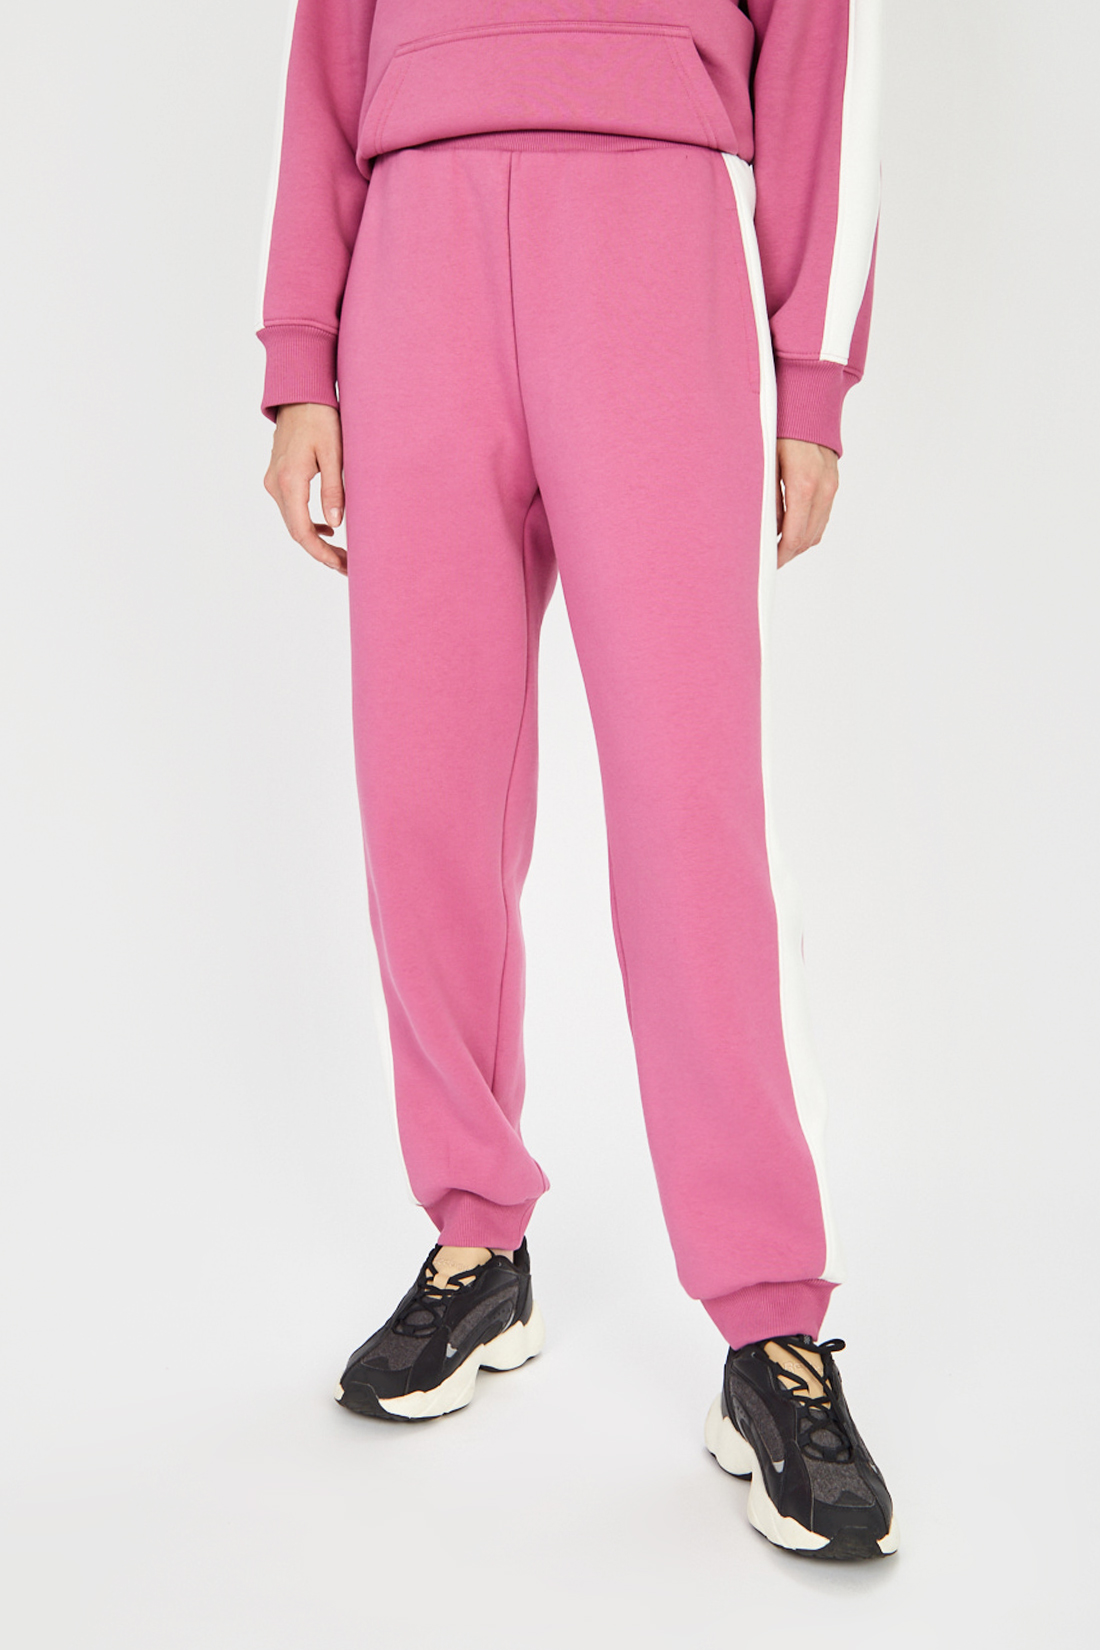 Спортивные брюки женские Baon B291506 розовые S